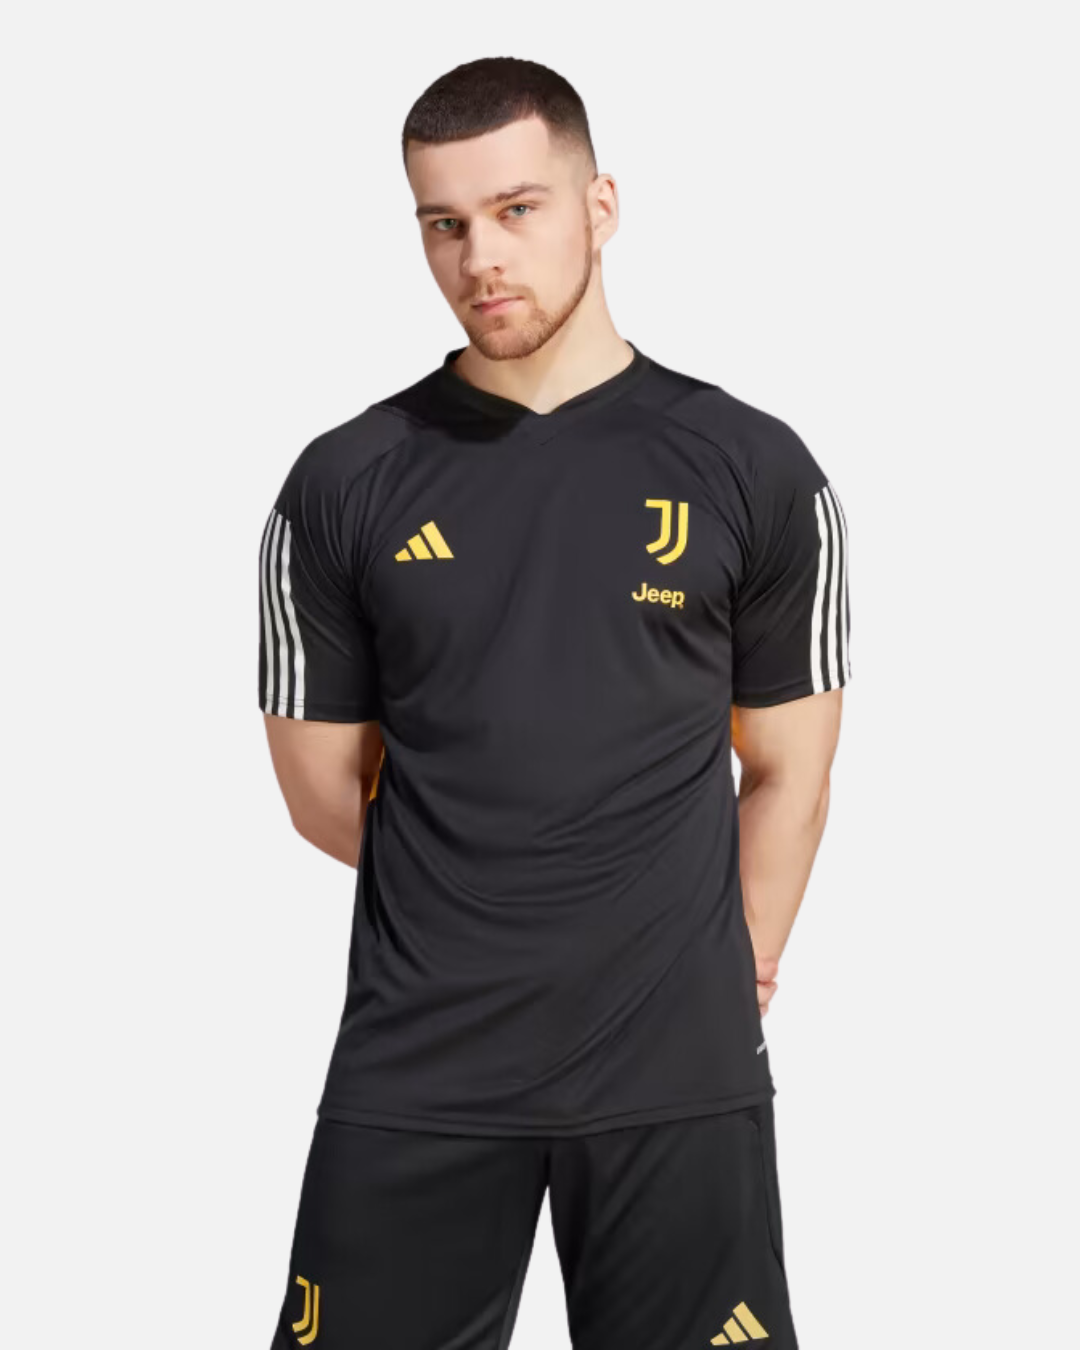 Juventus 2023/2024 training jersey - Black/Yellow/White